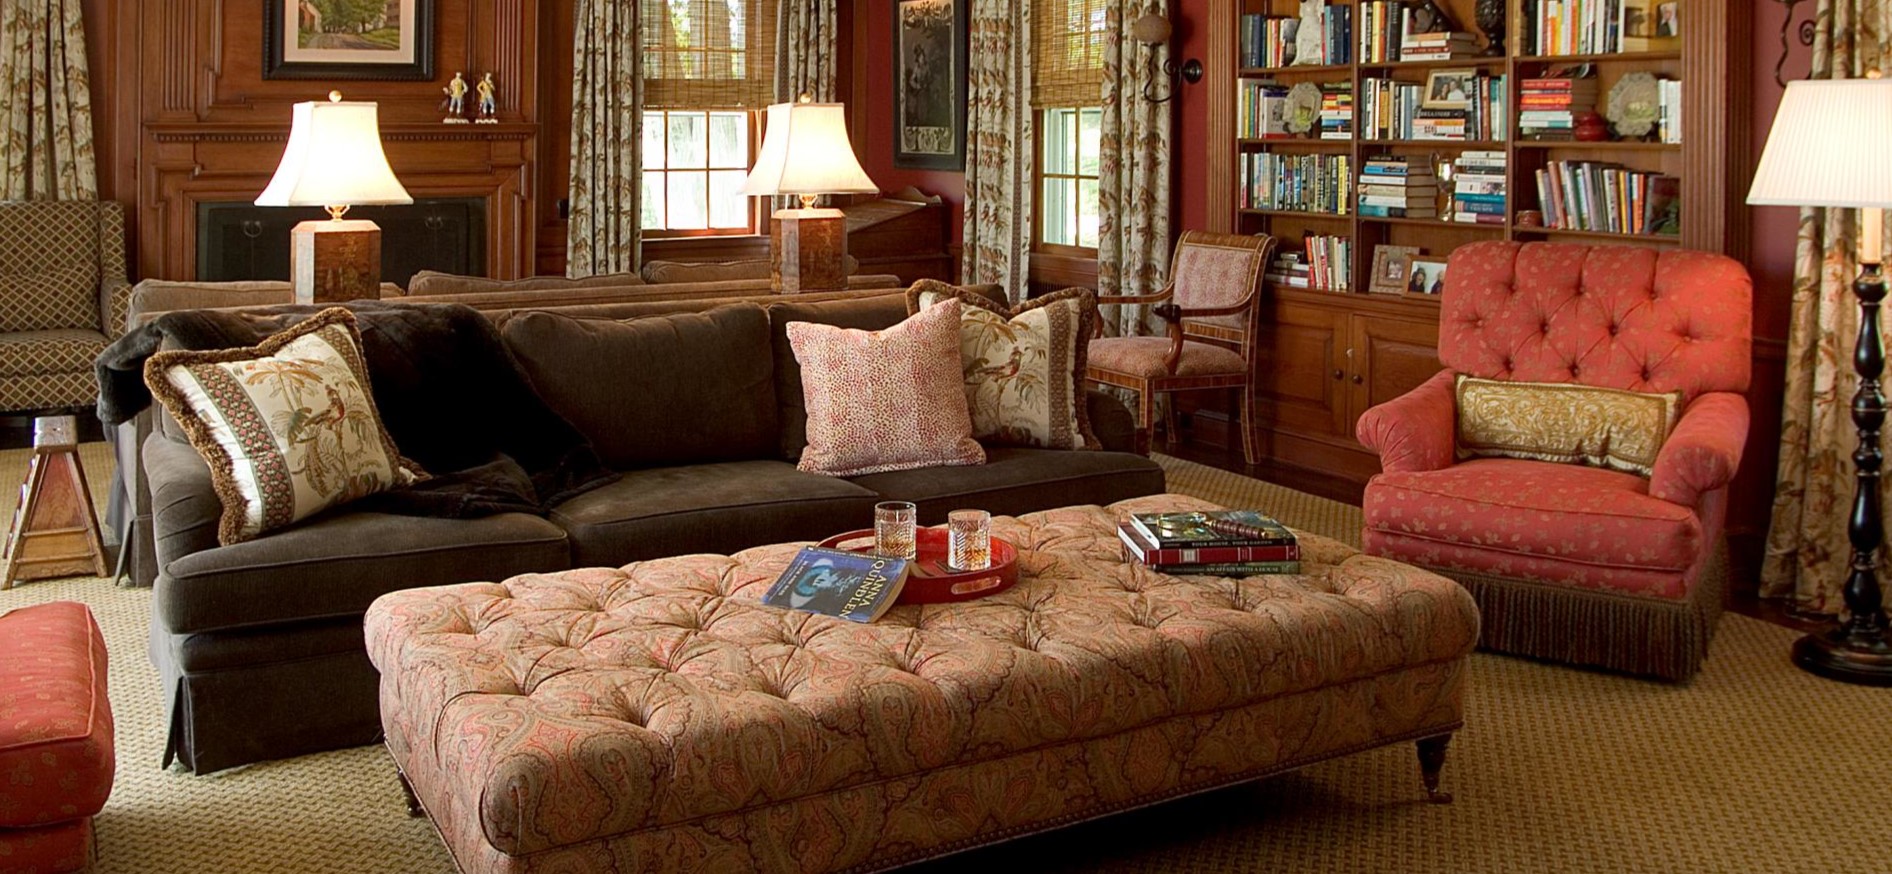 Темно-коричневый диван можно использовать в интерьере домашней библиотеки